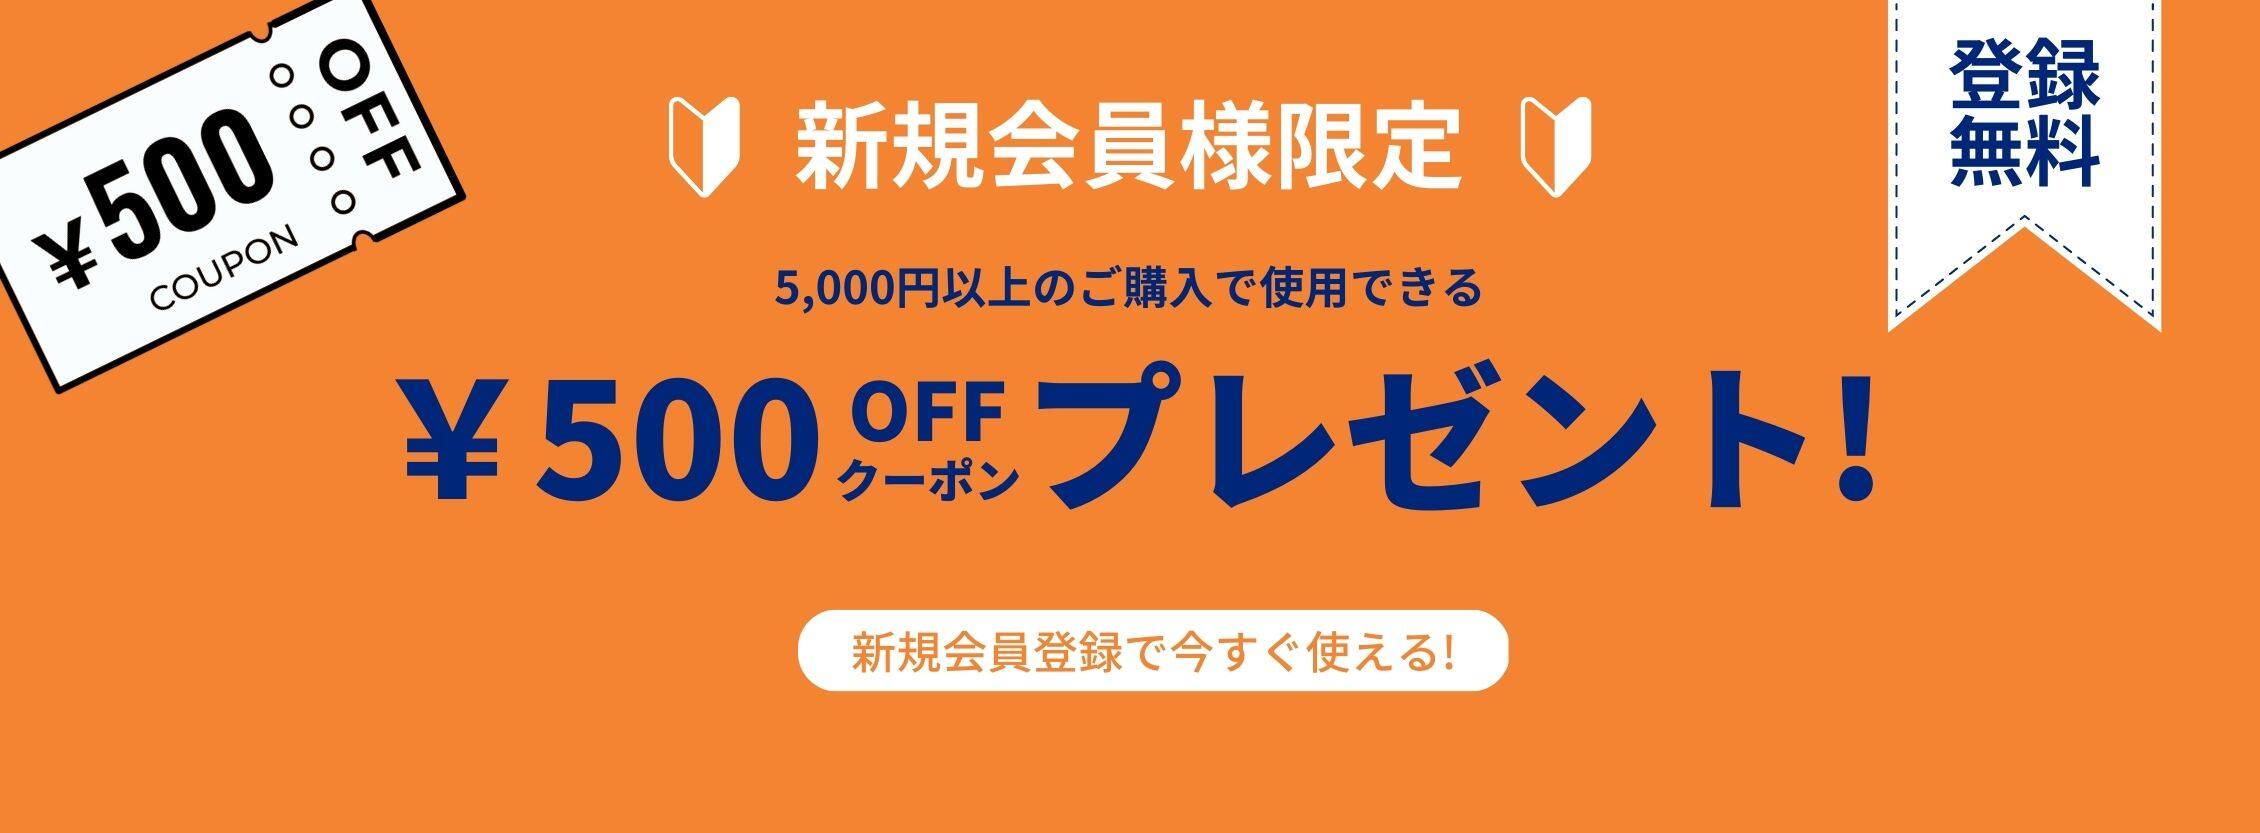 新規会員登録で今すぐ使える500円OFFクーポンプレゼント